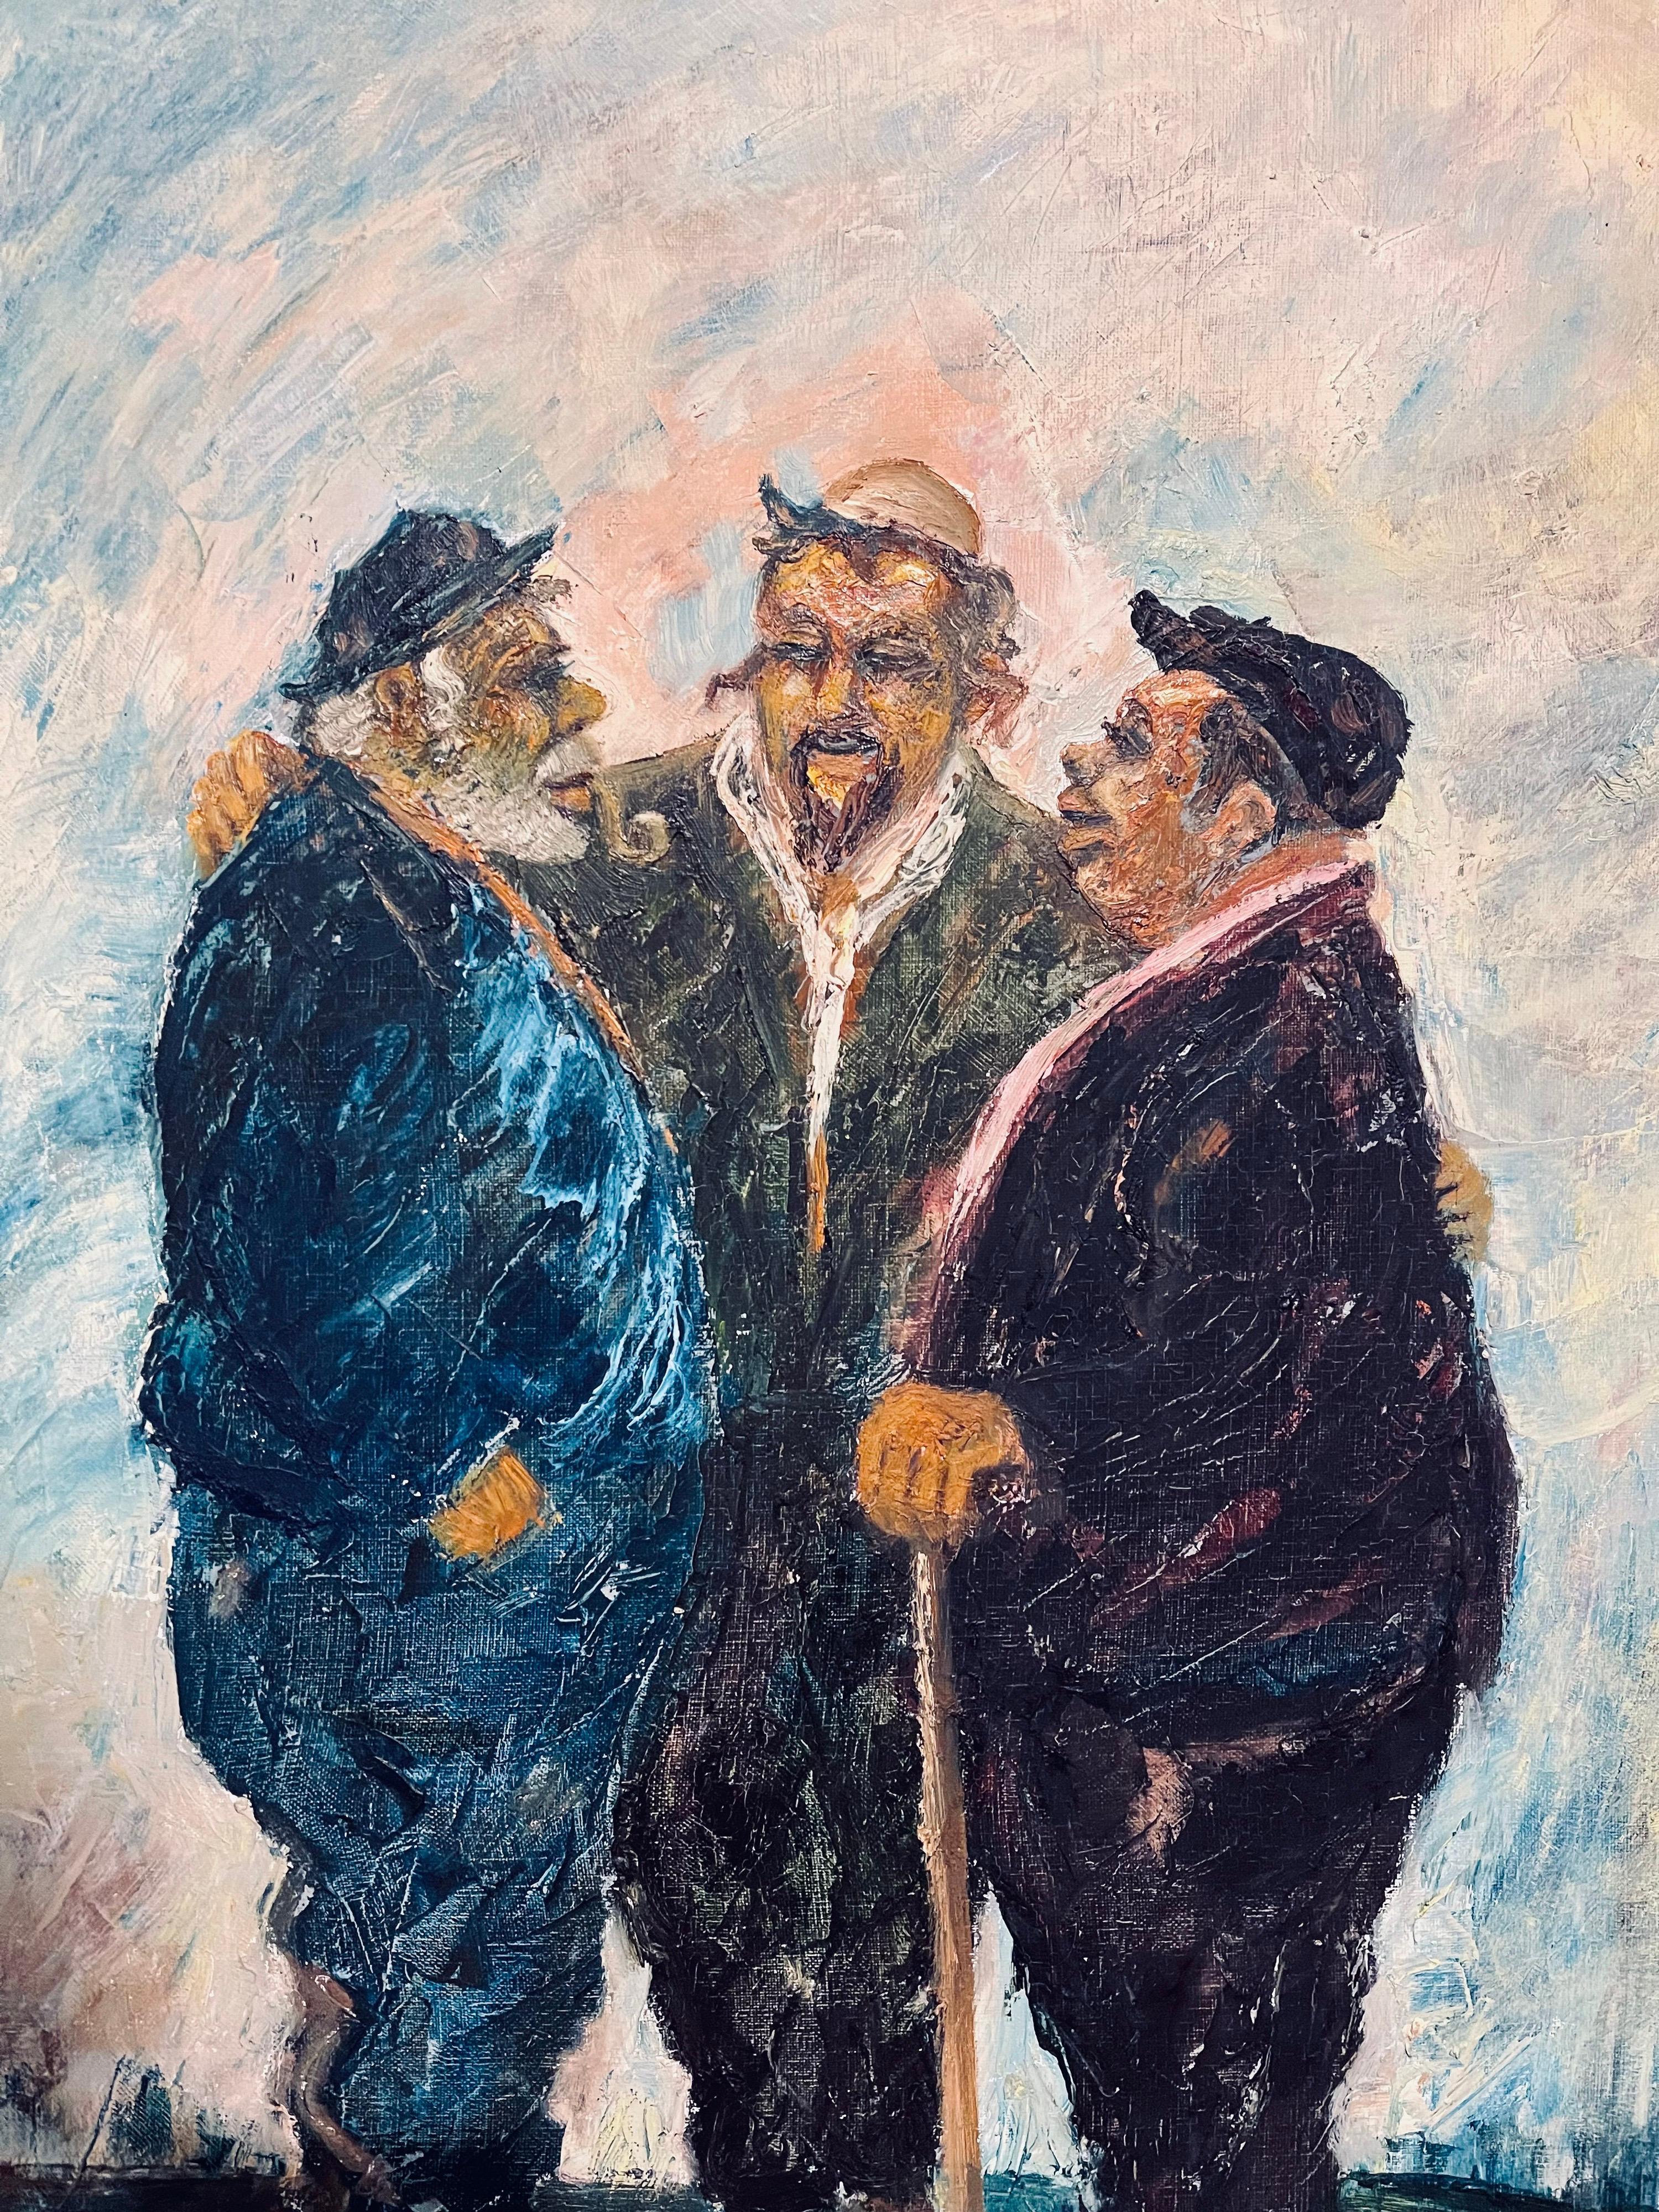 Sie zeigt jüdische Männer aus dem Nahen Osten sefardischer Abstammung. Zumindest einer scheint ein Rabbiner zu sein.

ALBERT GOLDMAN Geboren 1922 in Alexandria, Ägypten, begann Albert Goldman im Alter von 8 Jahren zu zeichnen und zu malen. 1936